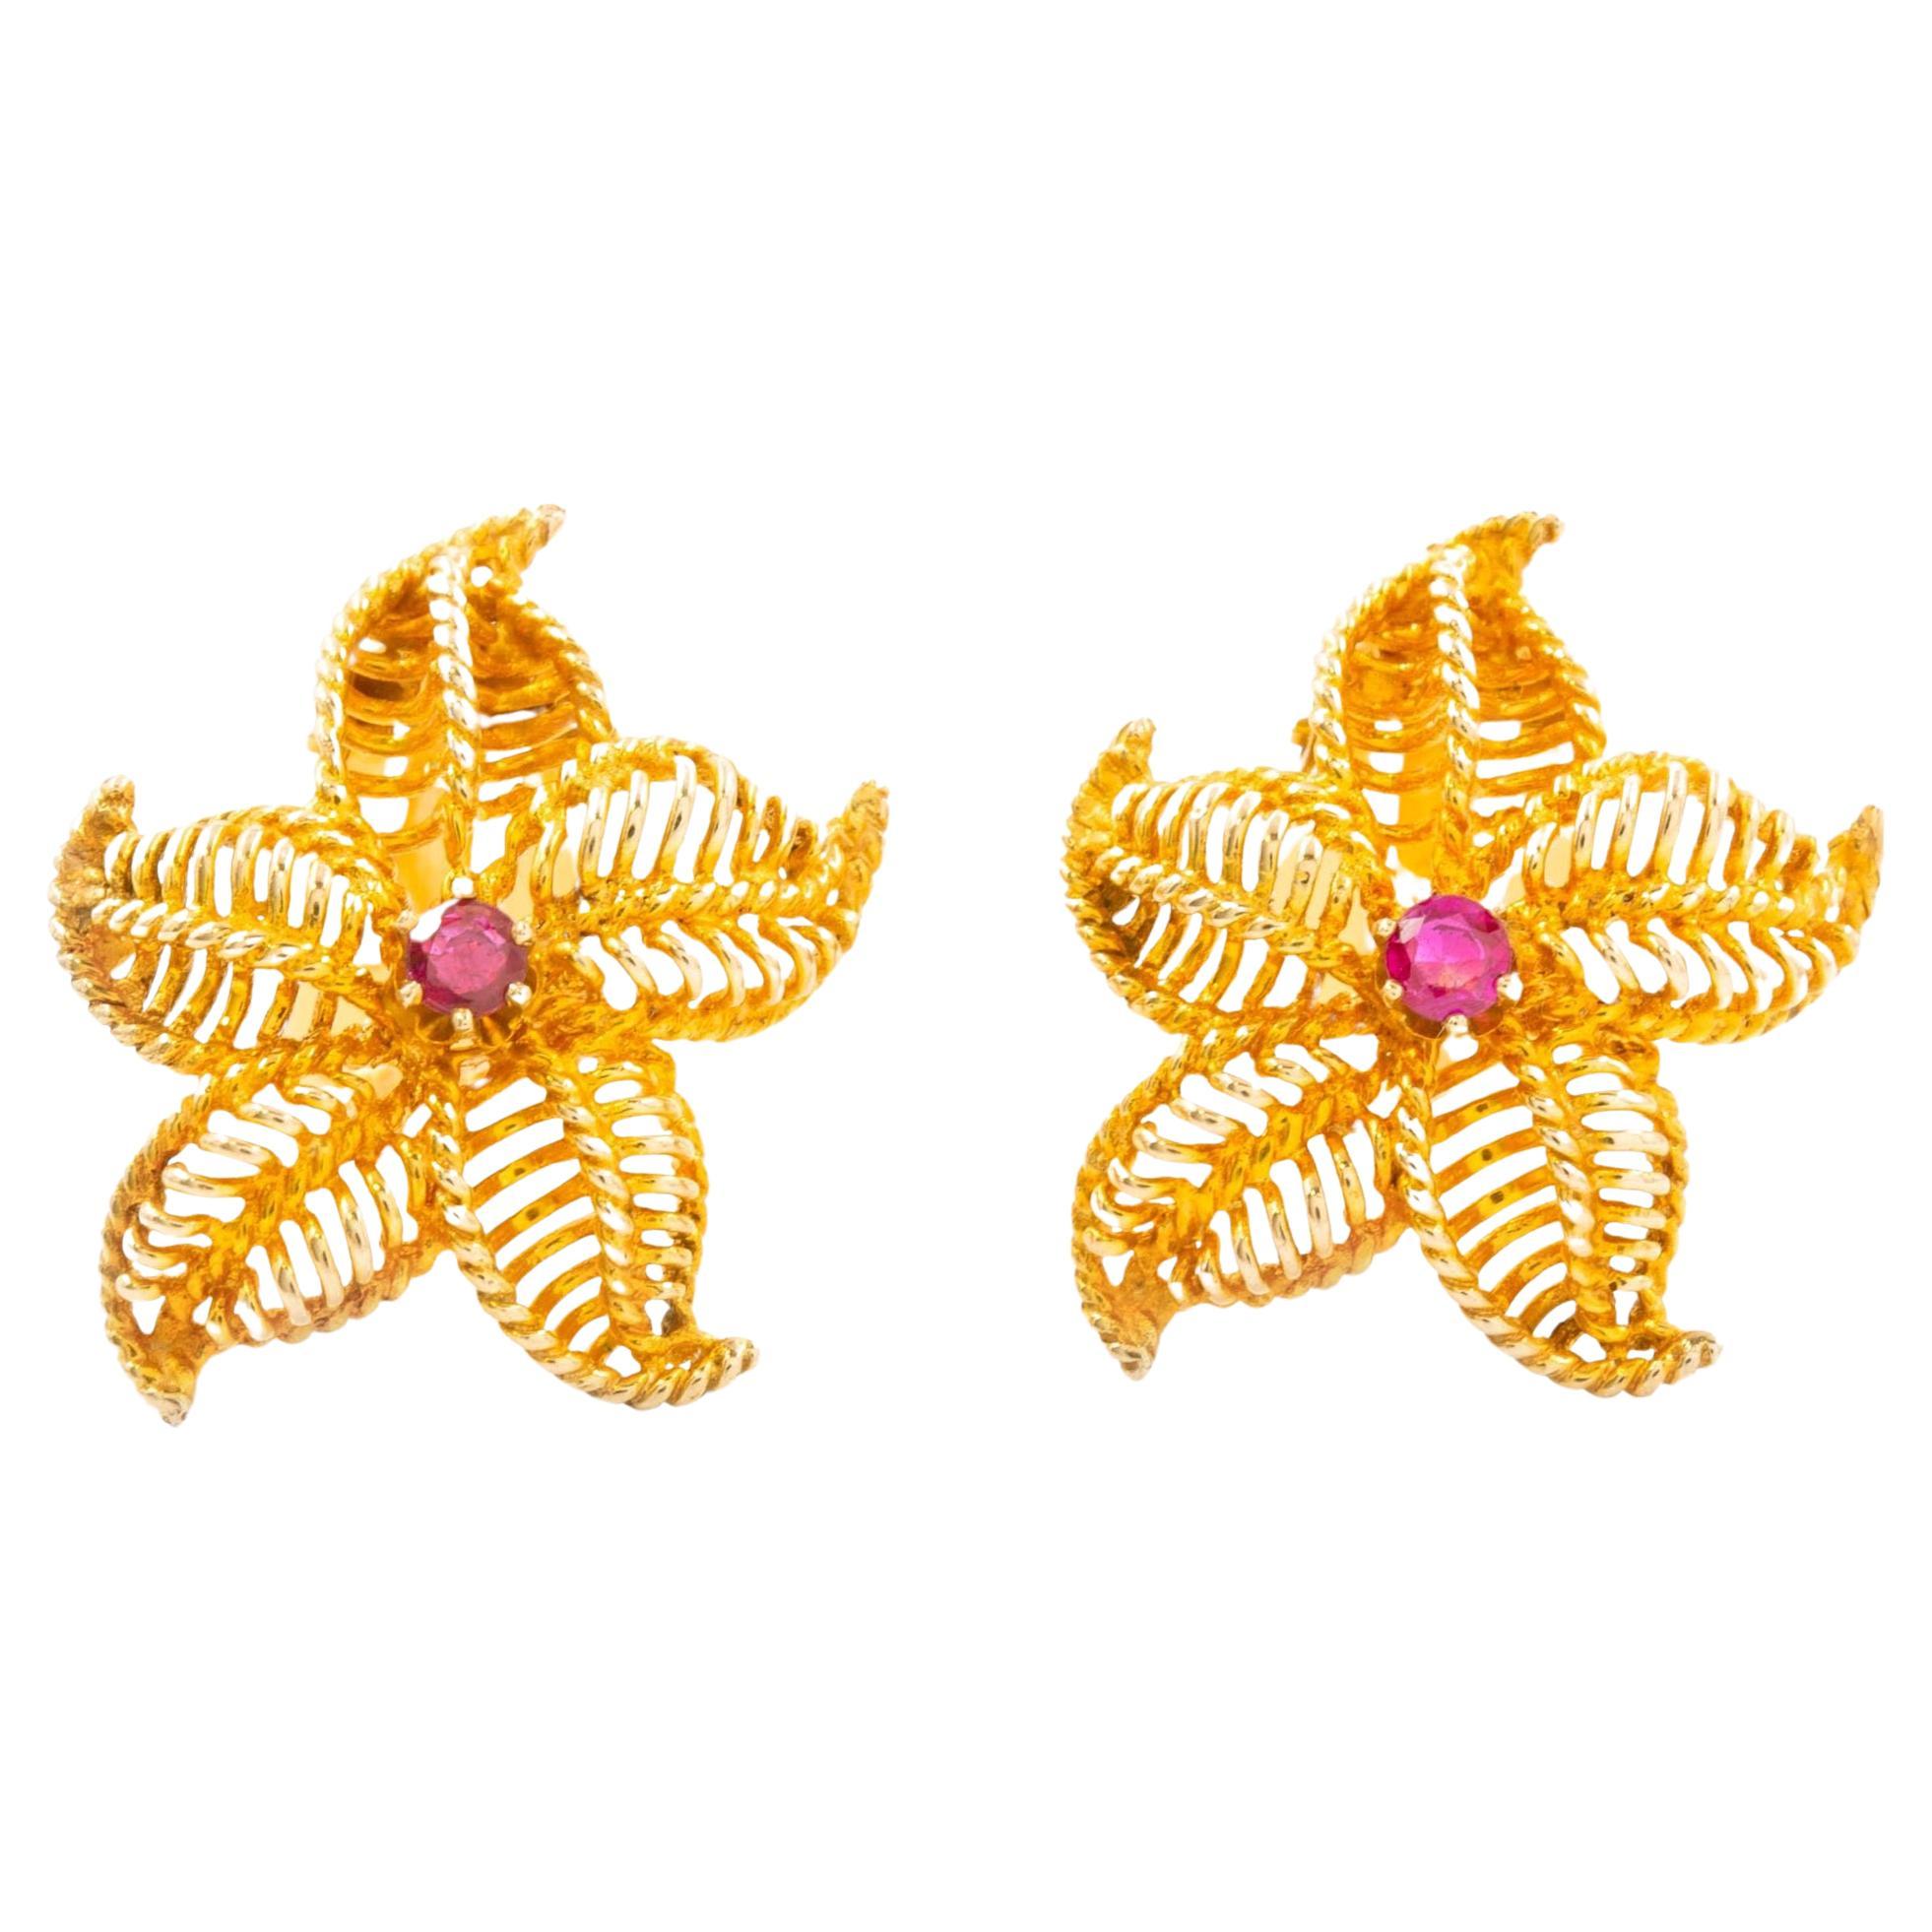 Pair of 14K Yellow Gold & Gemstone Starfish Earrings